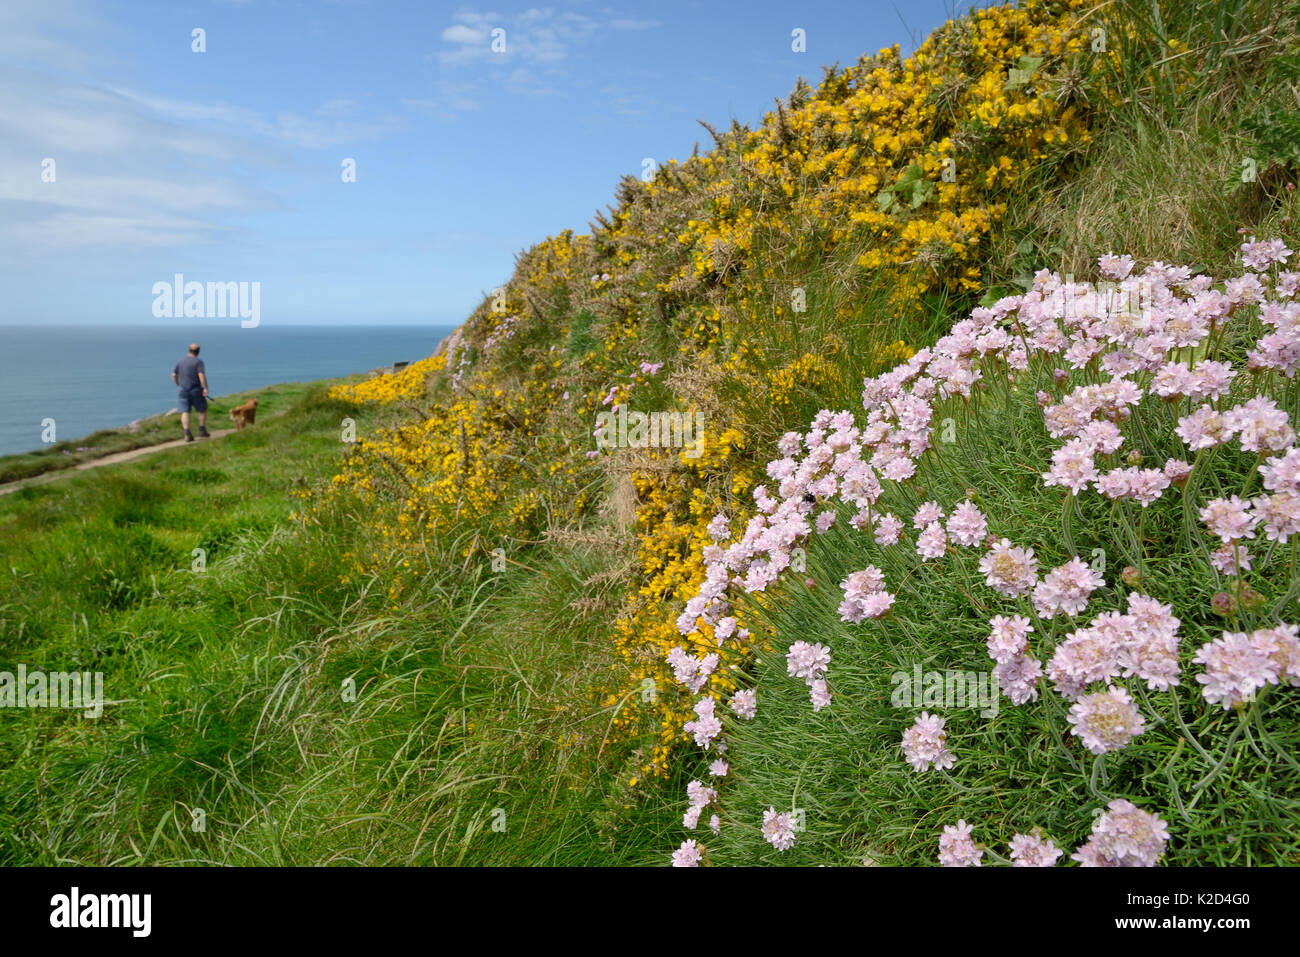 Mar thrift (Armeria maritima) y arbustos Aliaga (Ulex europaeus) floración en una vieja pared junto a un acantilado camino con un hombre caminando un perro, Widemouth Bay, Cornwall, Reino Unido, Mayo. Foto de stock